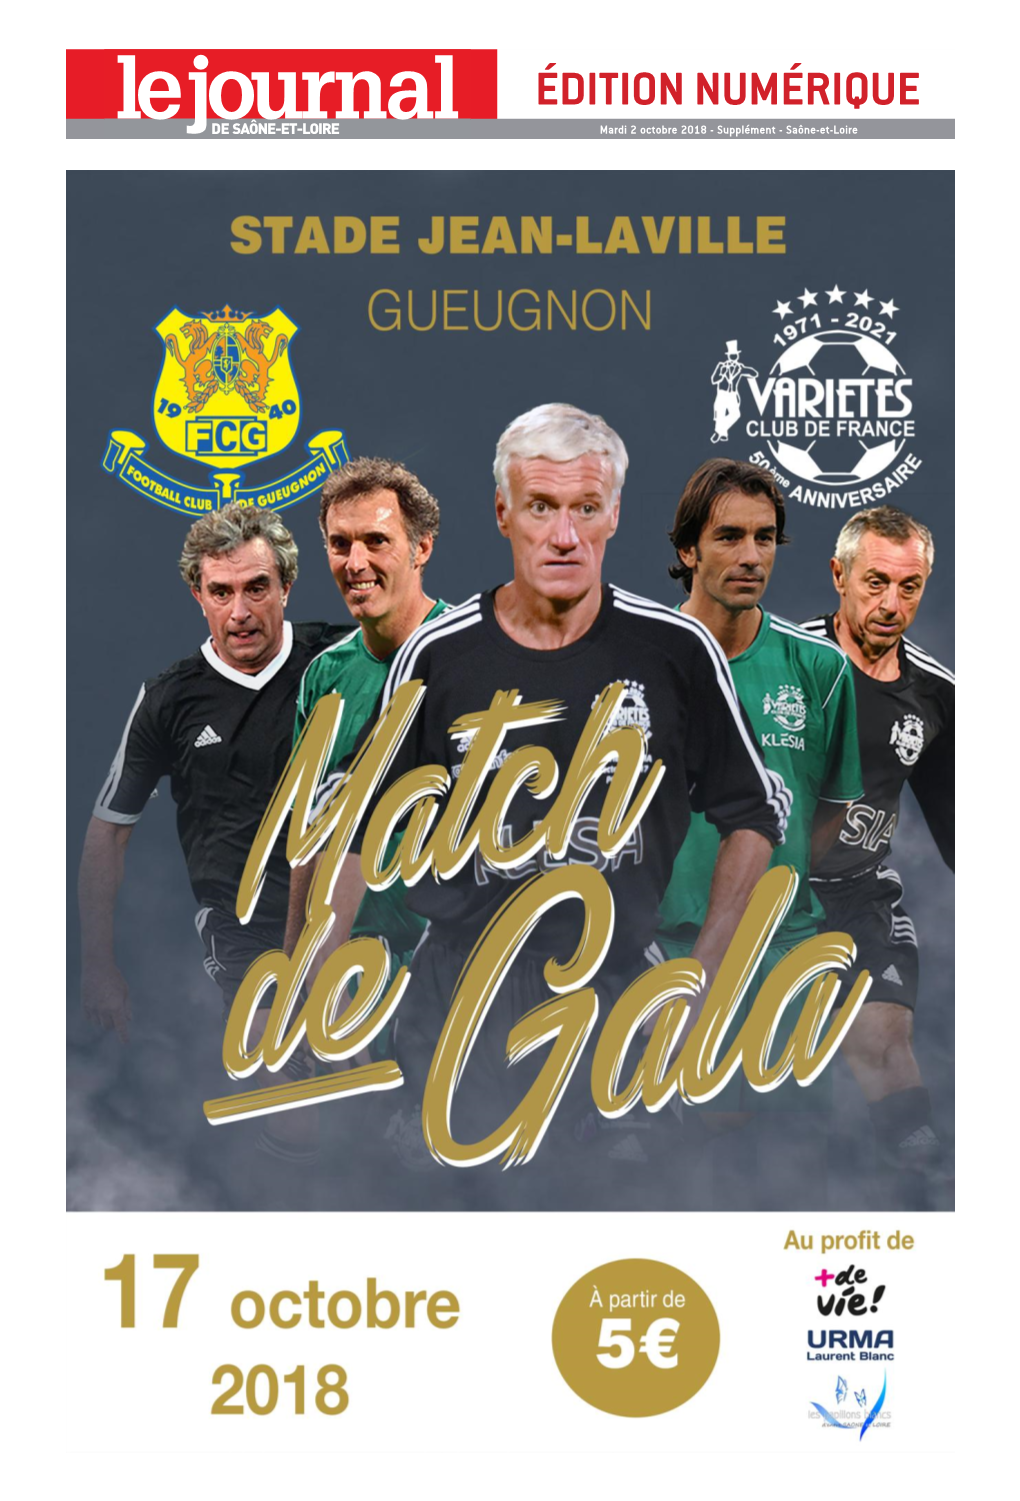 FC Gueugnon / Variétés Club De France : Le Match De Gala